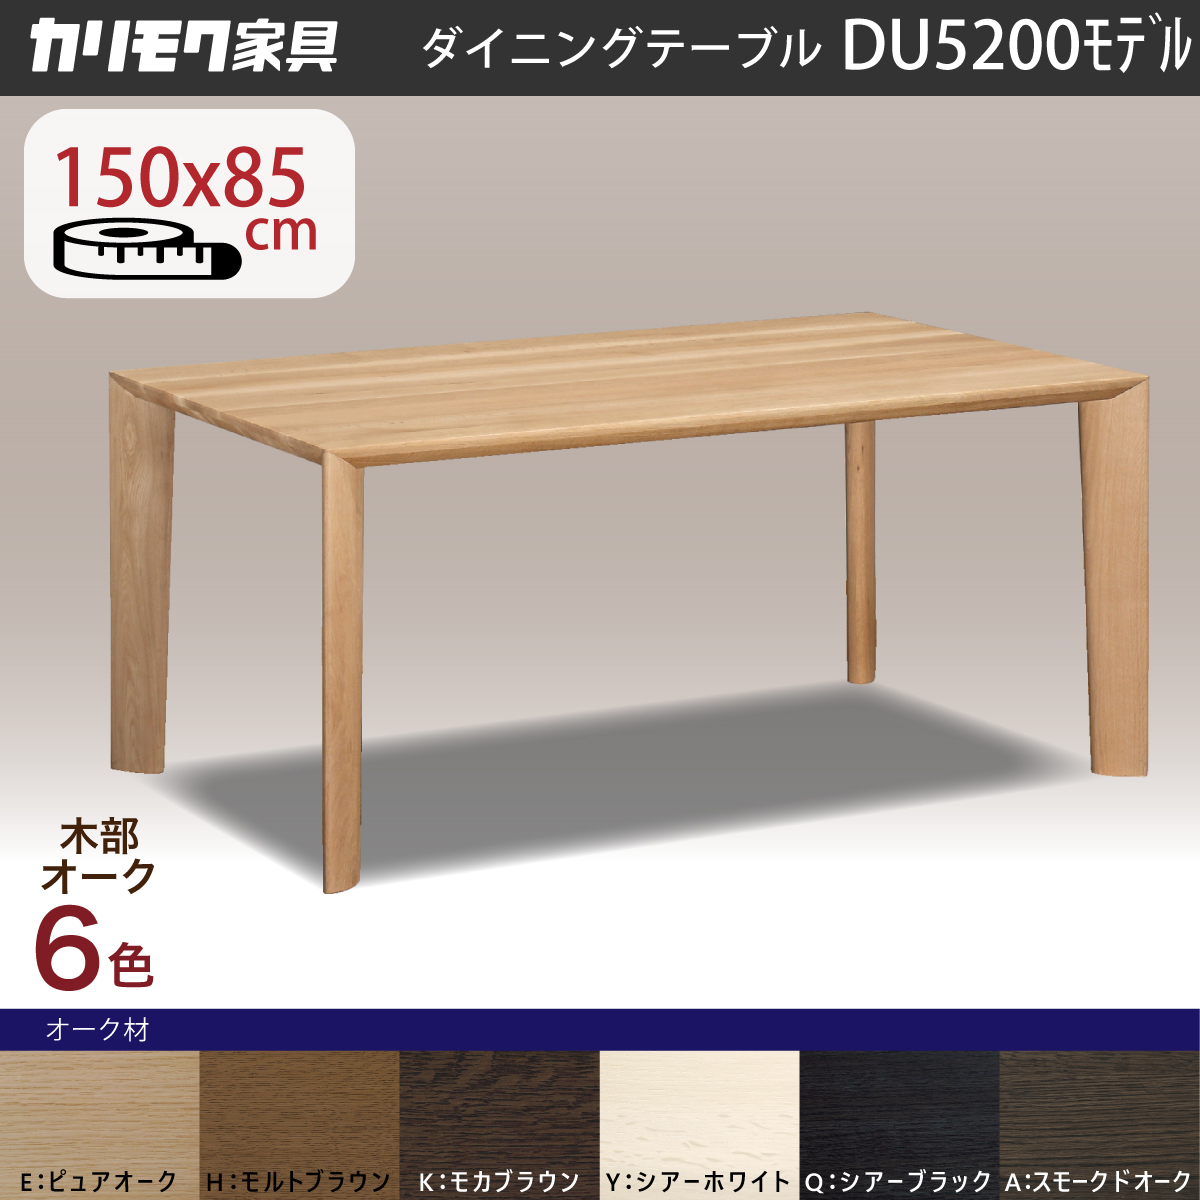 ダイニングテーブル 4人カリモク 食堂テーブル DU5200 幅150 奥行85